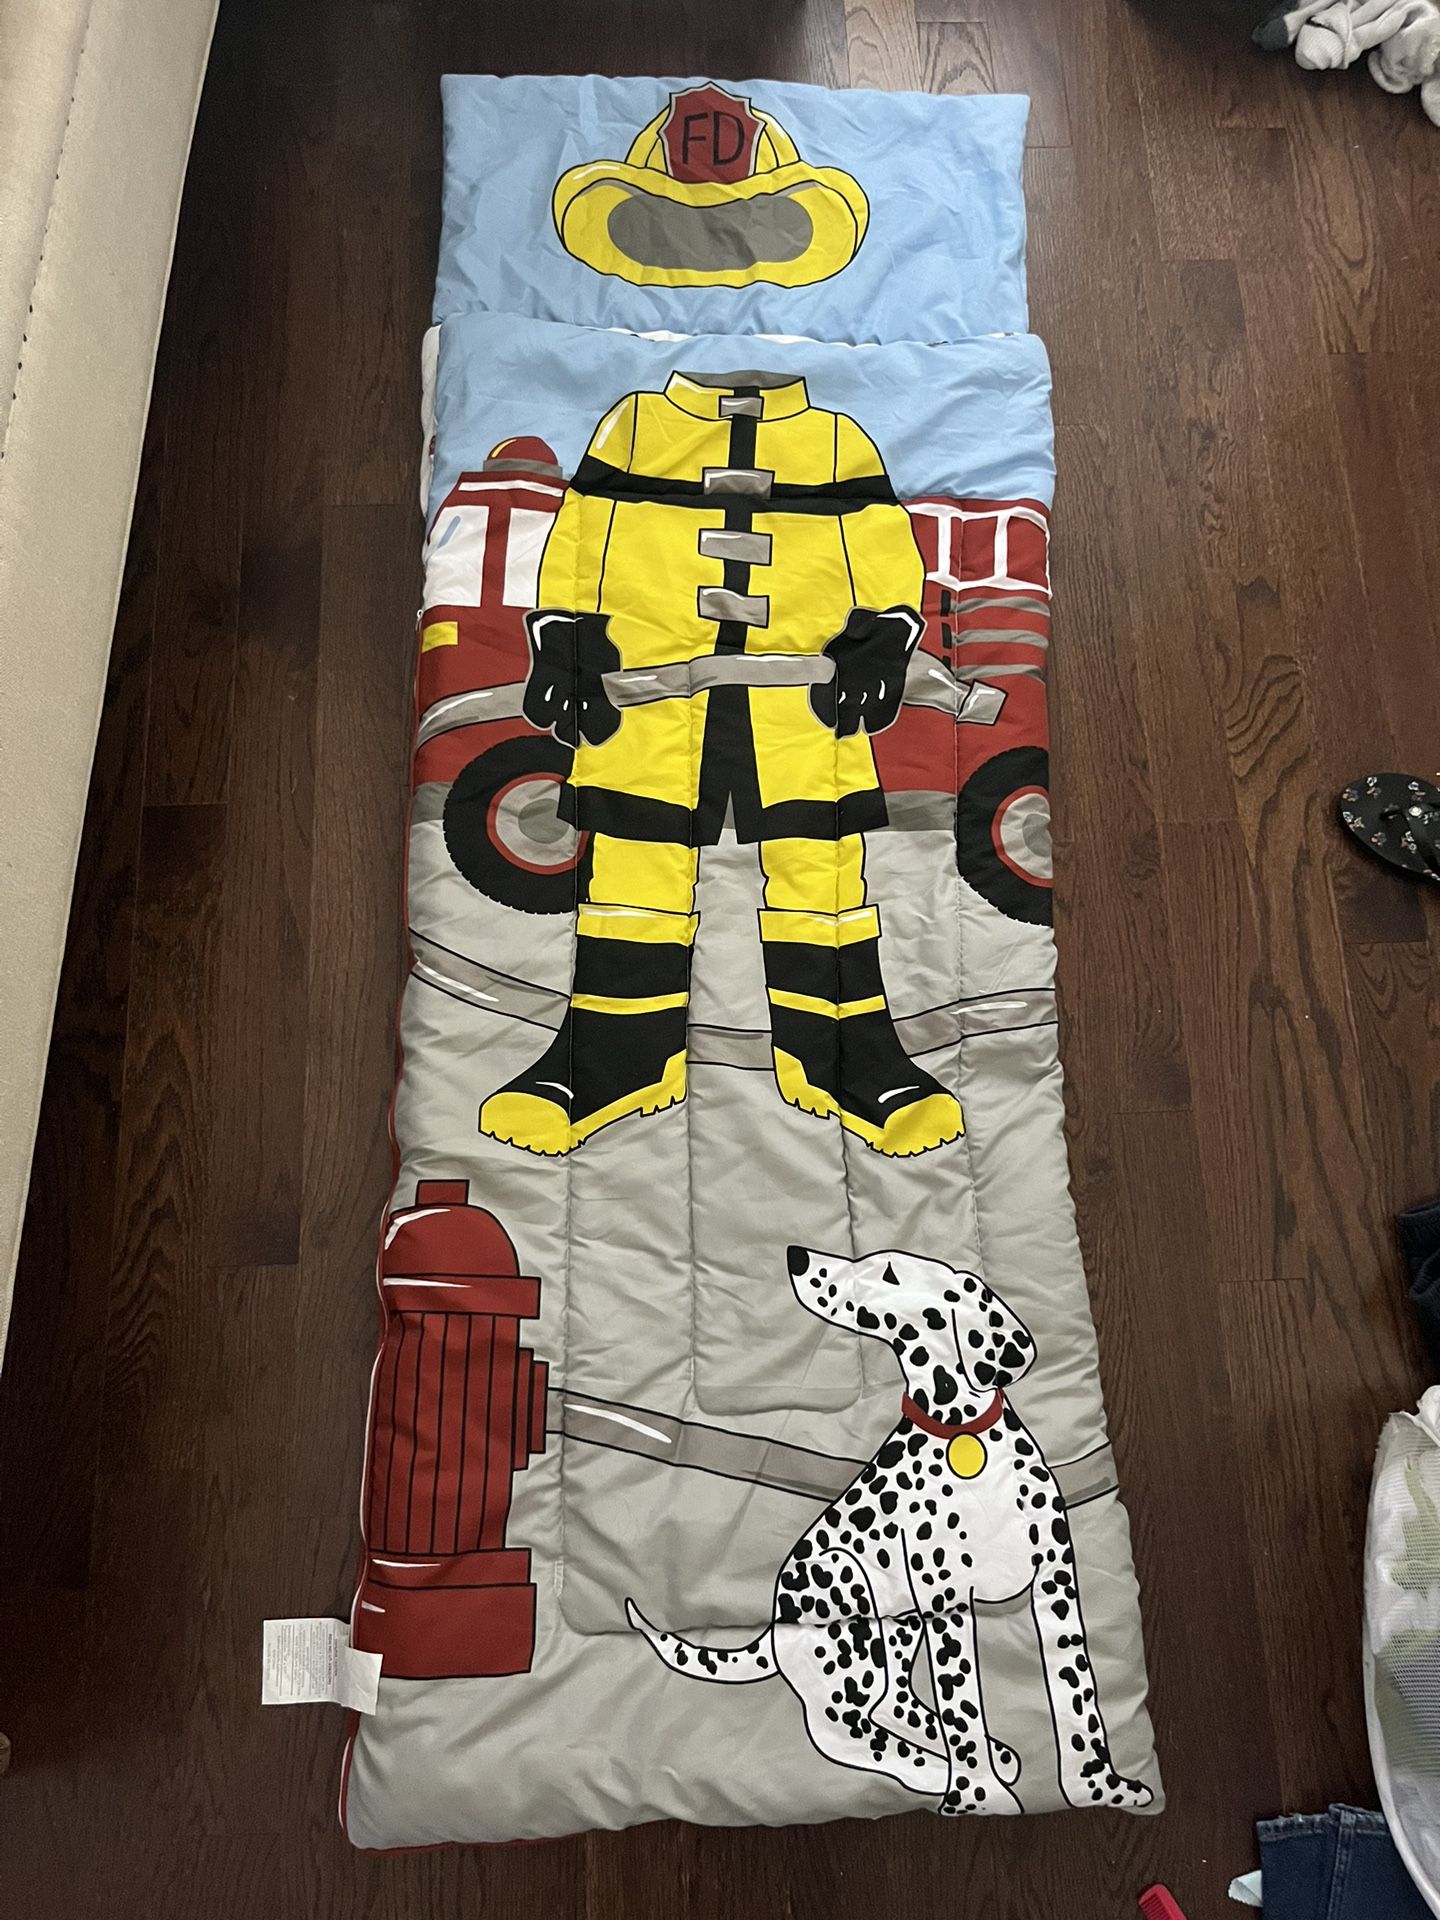 Fireman’s Sleeping bag